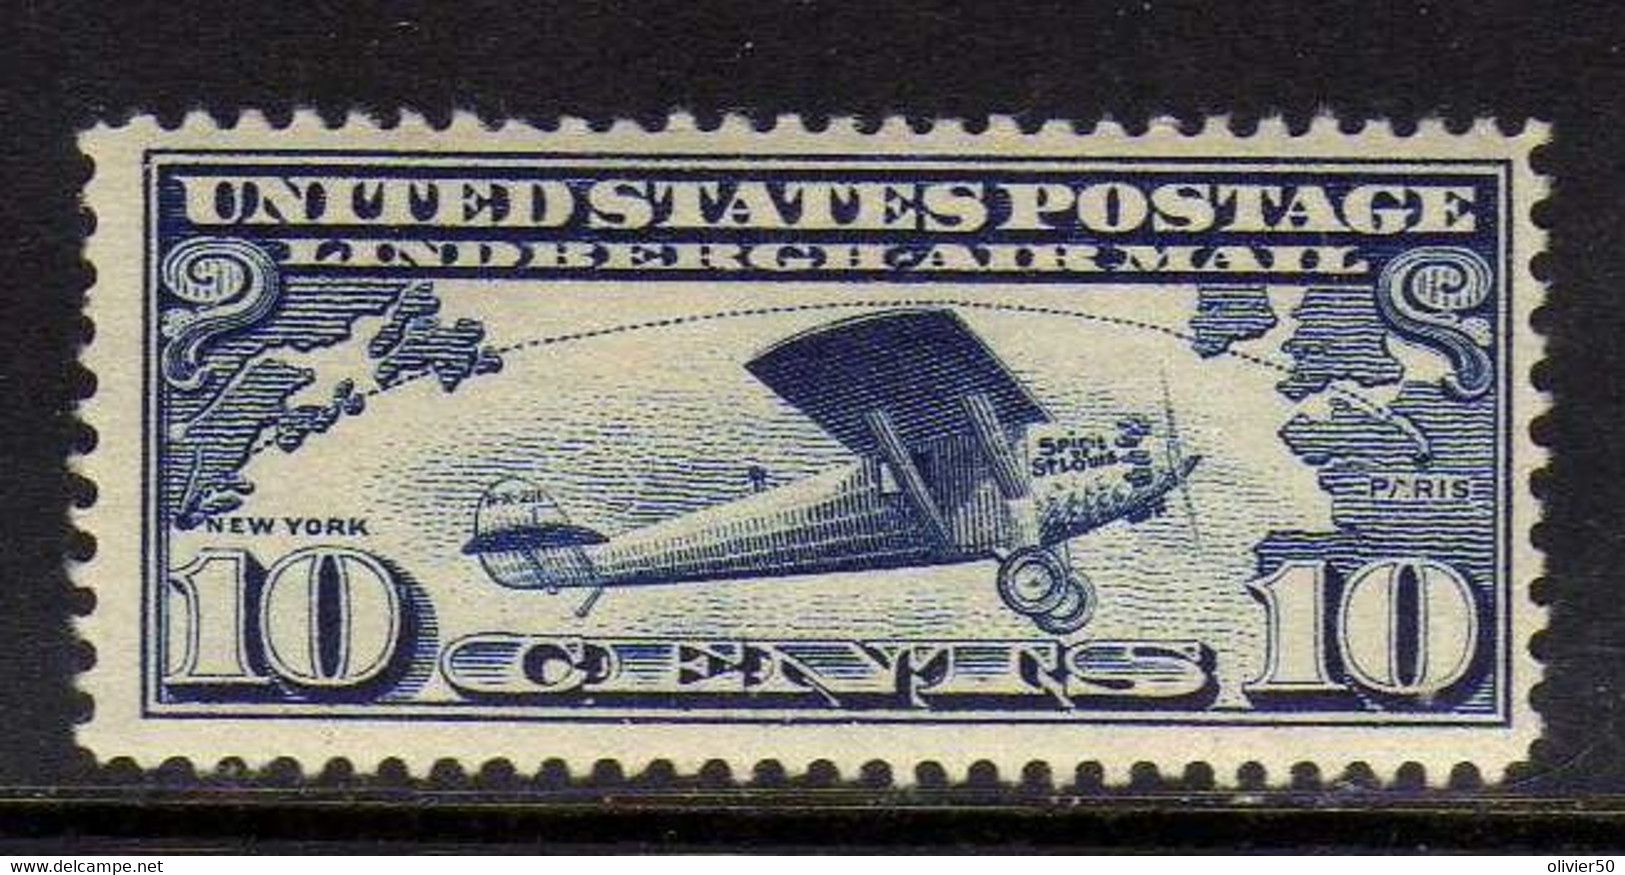 Etats-Unis - (1927)   -  Poste Aerienne   Traversee De L'Atlantique Par Lindbergh - Neufs* - MLH - 1b. 1918-1940 Neufs